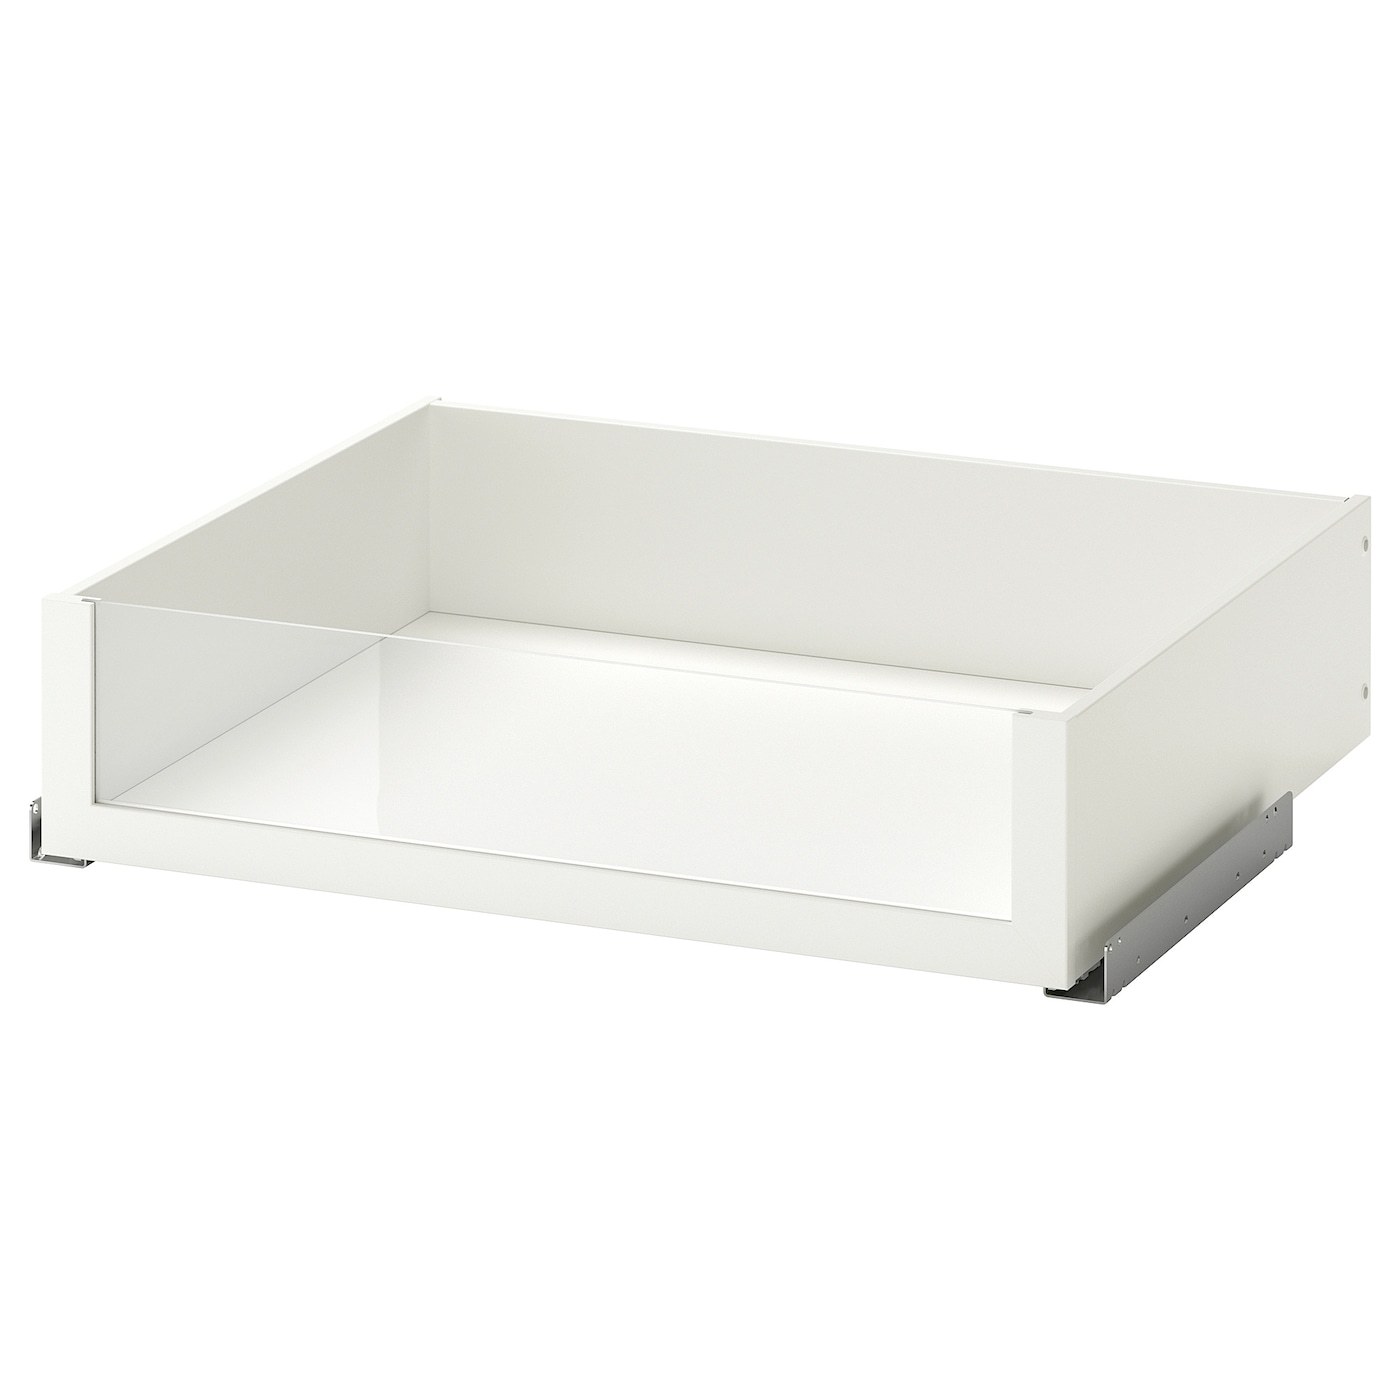 Ящик с фронтальной панелью - IKEA KOMPLEMENT, 75x58 см, белый КОМПЛИМЕНТ ИКЕА